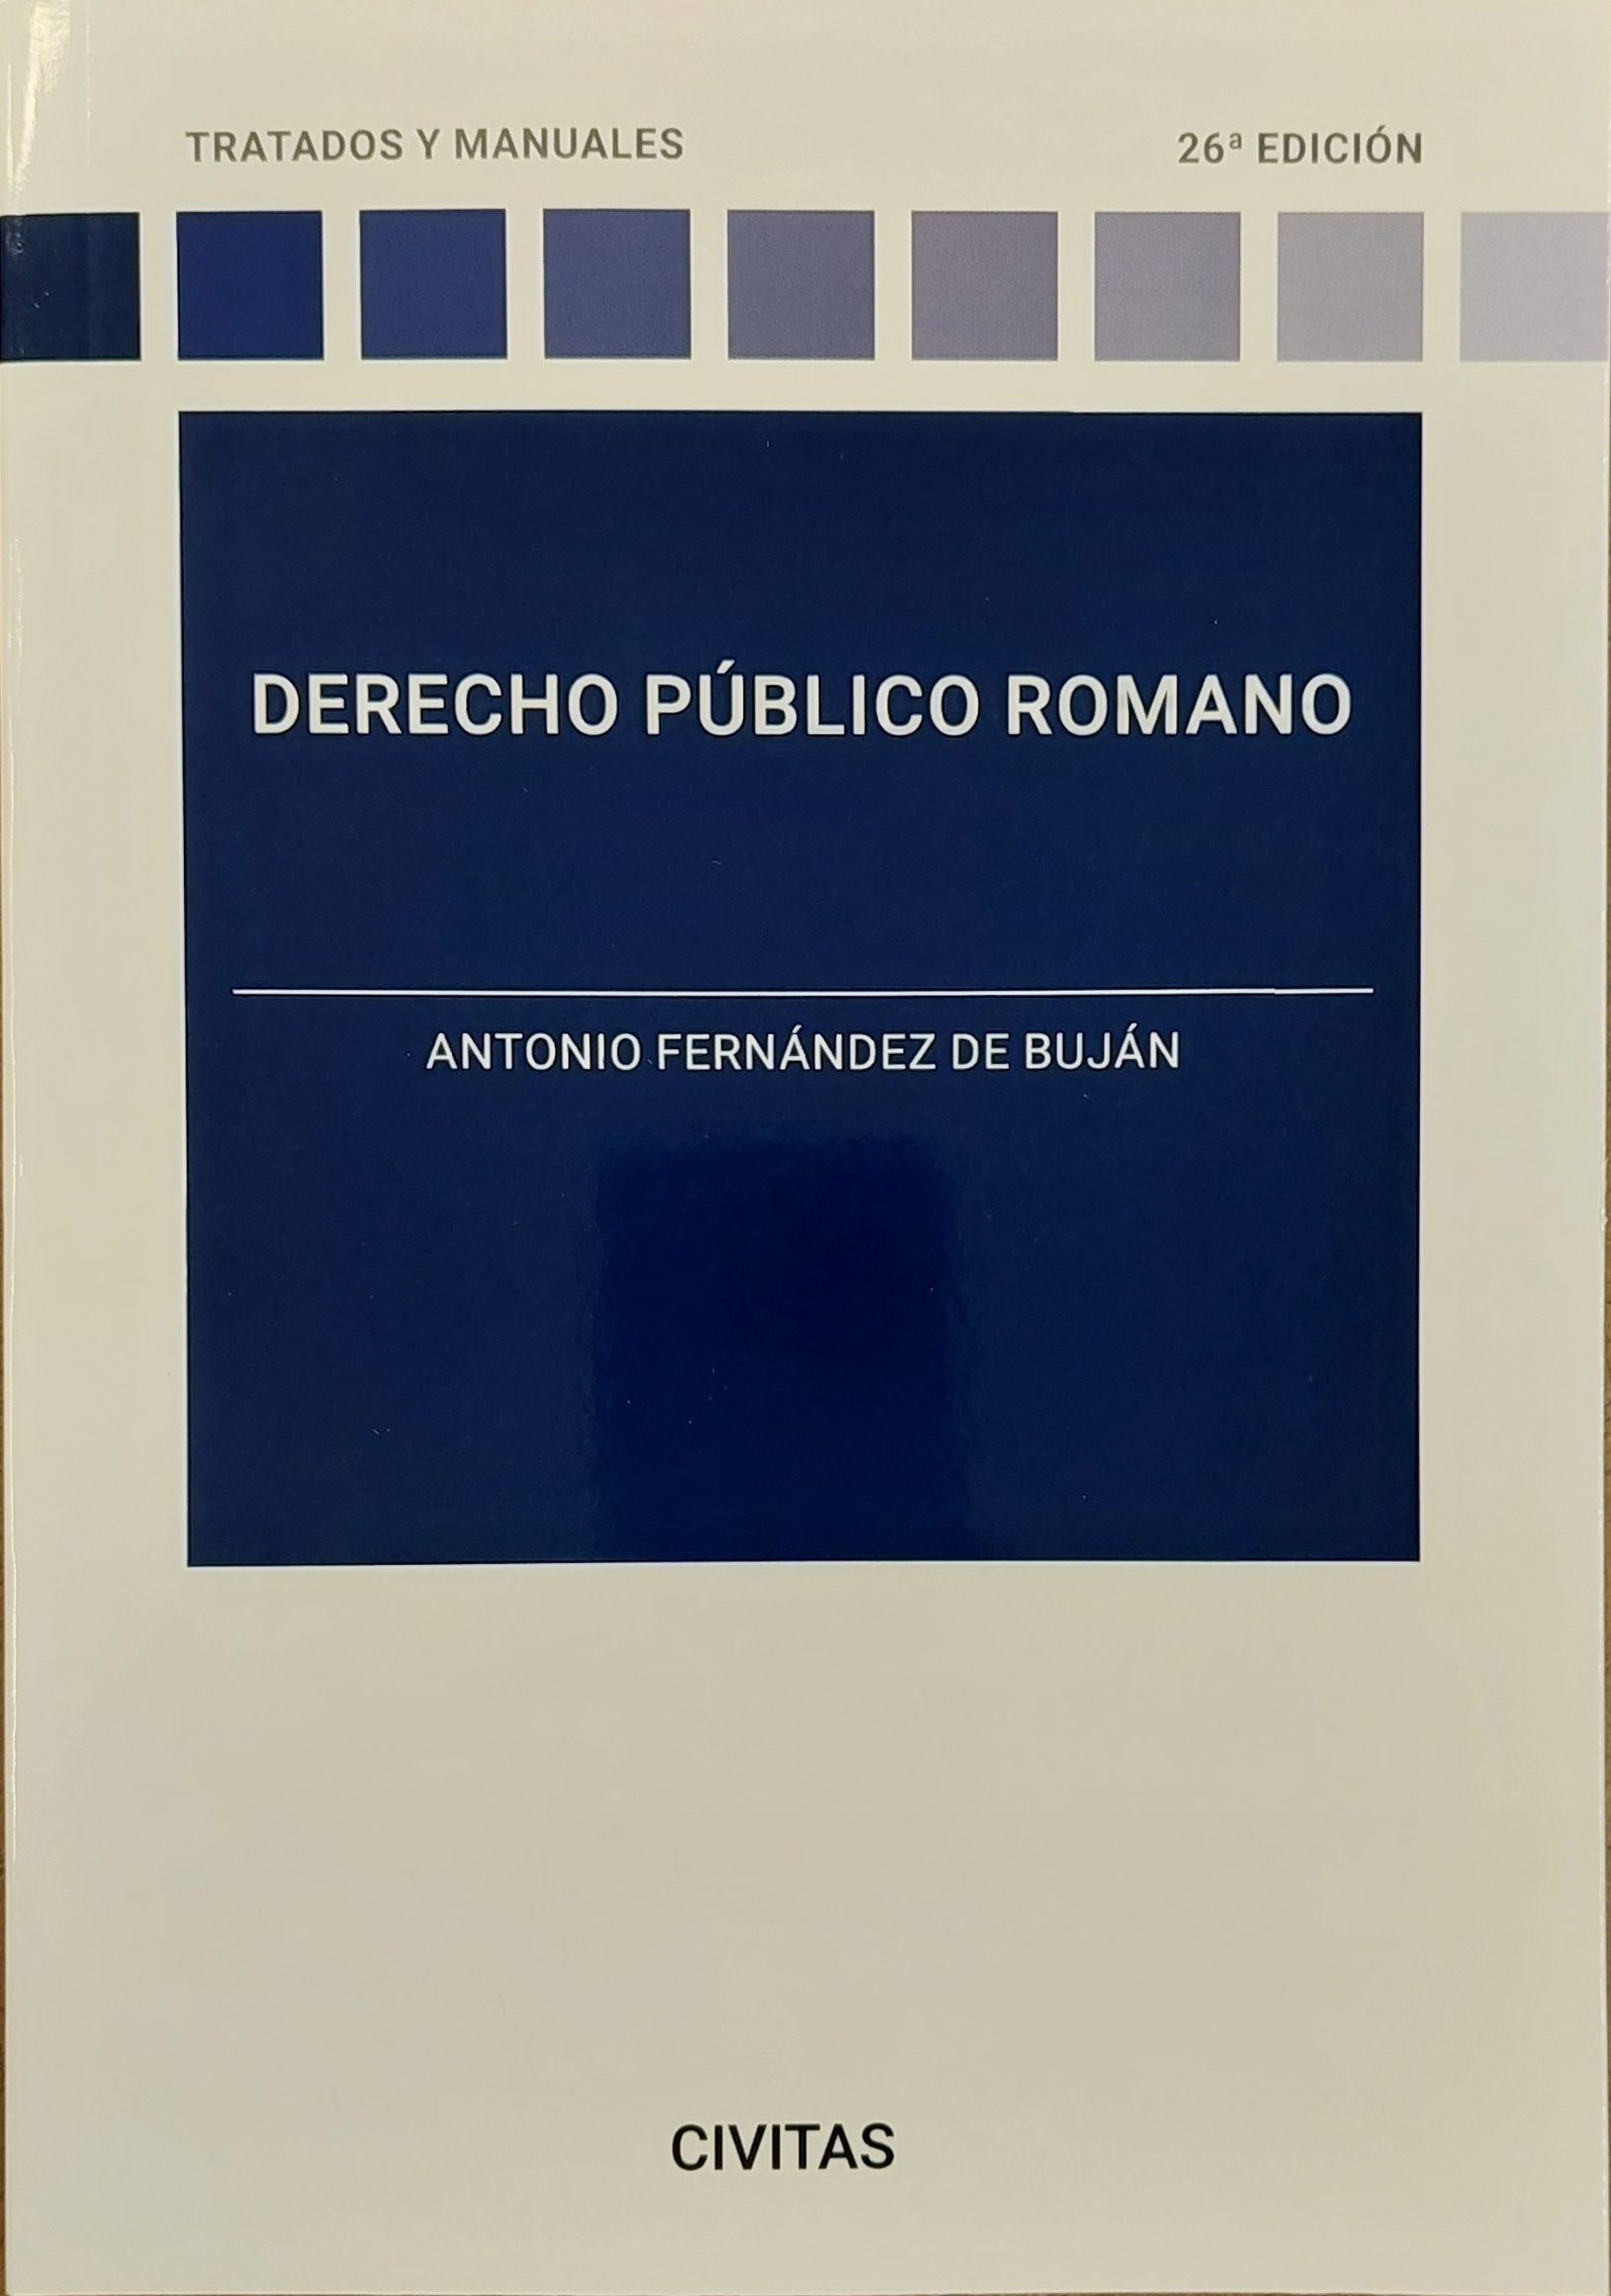 Derecho publico romano